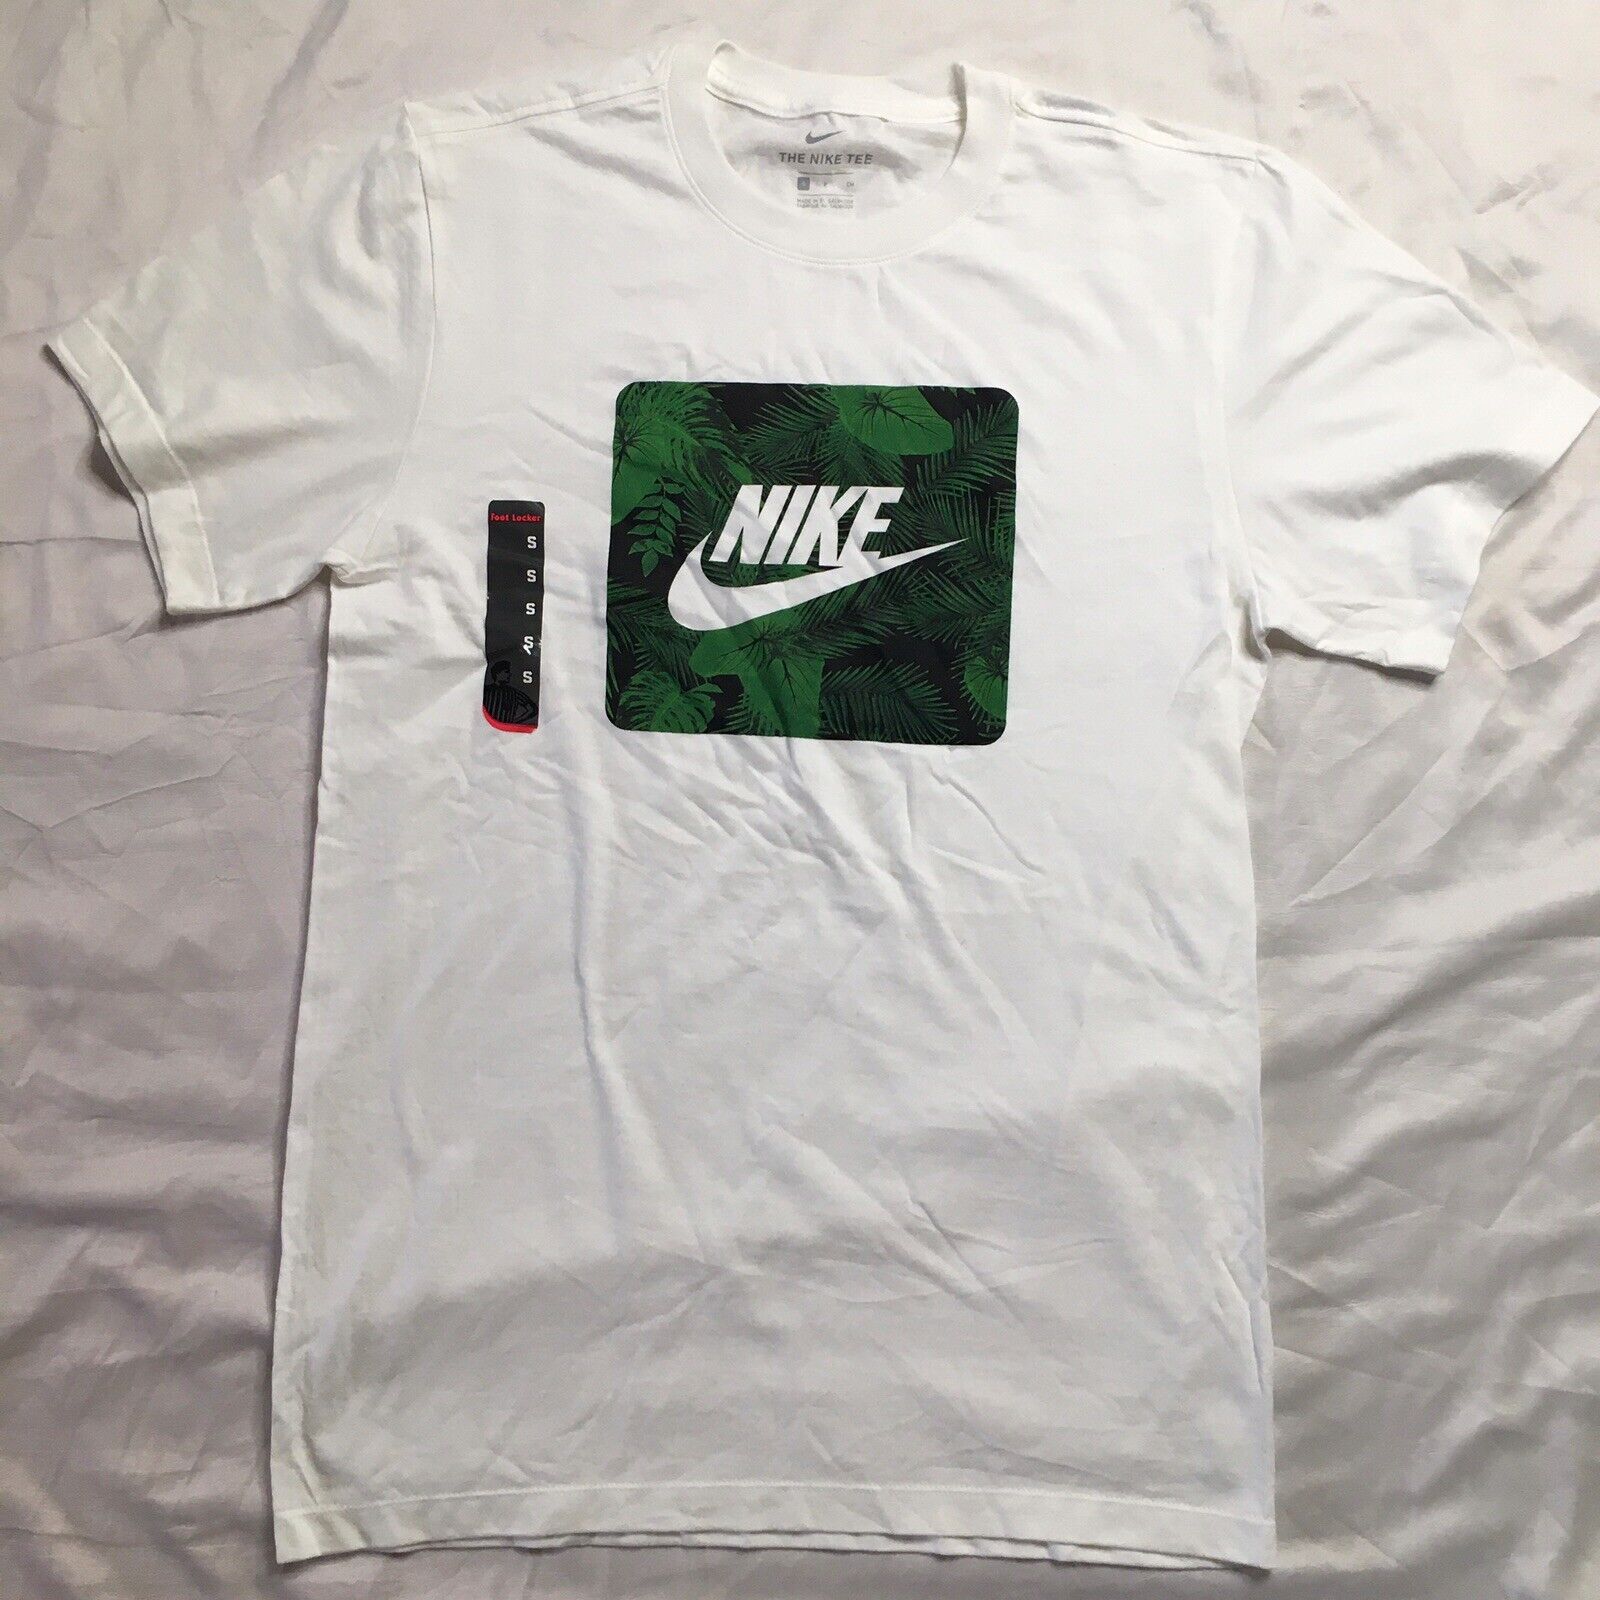 Nike Graphic T Shirt Jungle Safari Chest Print 1999 Vintage Rare